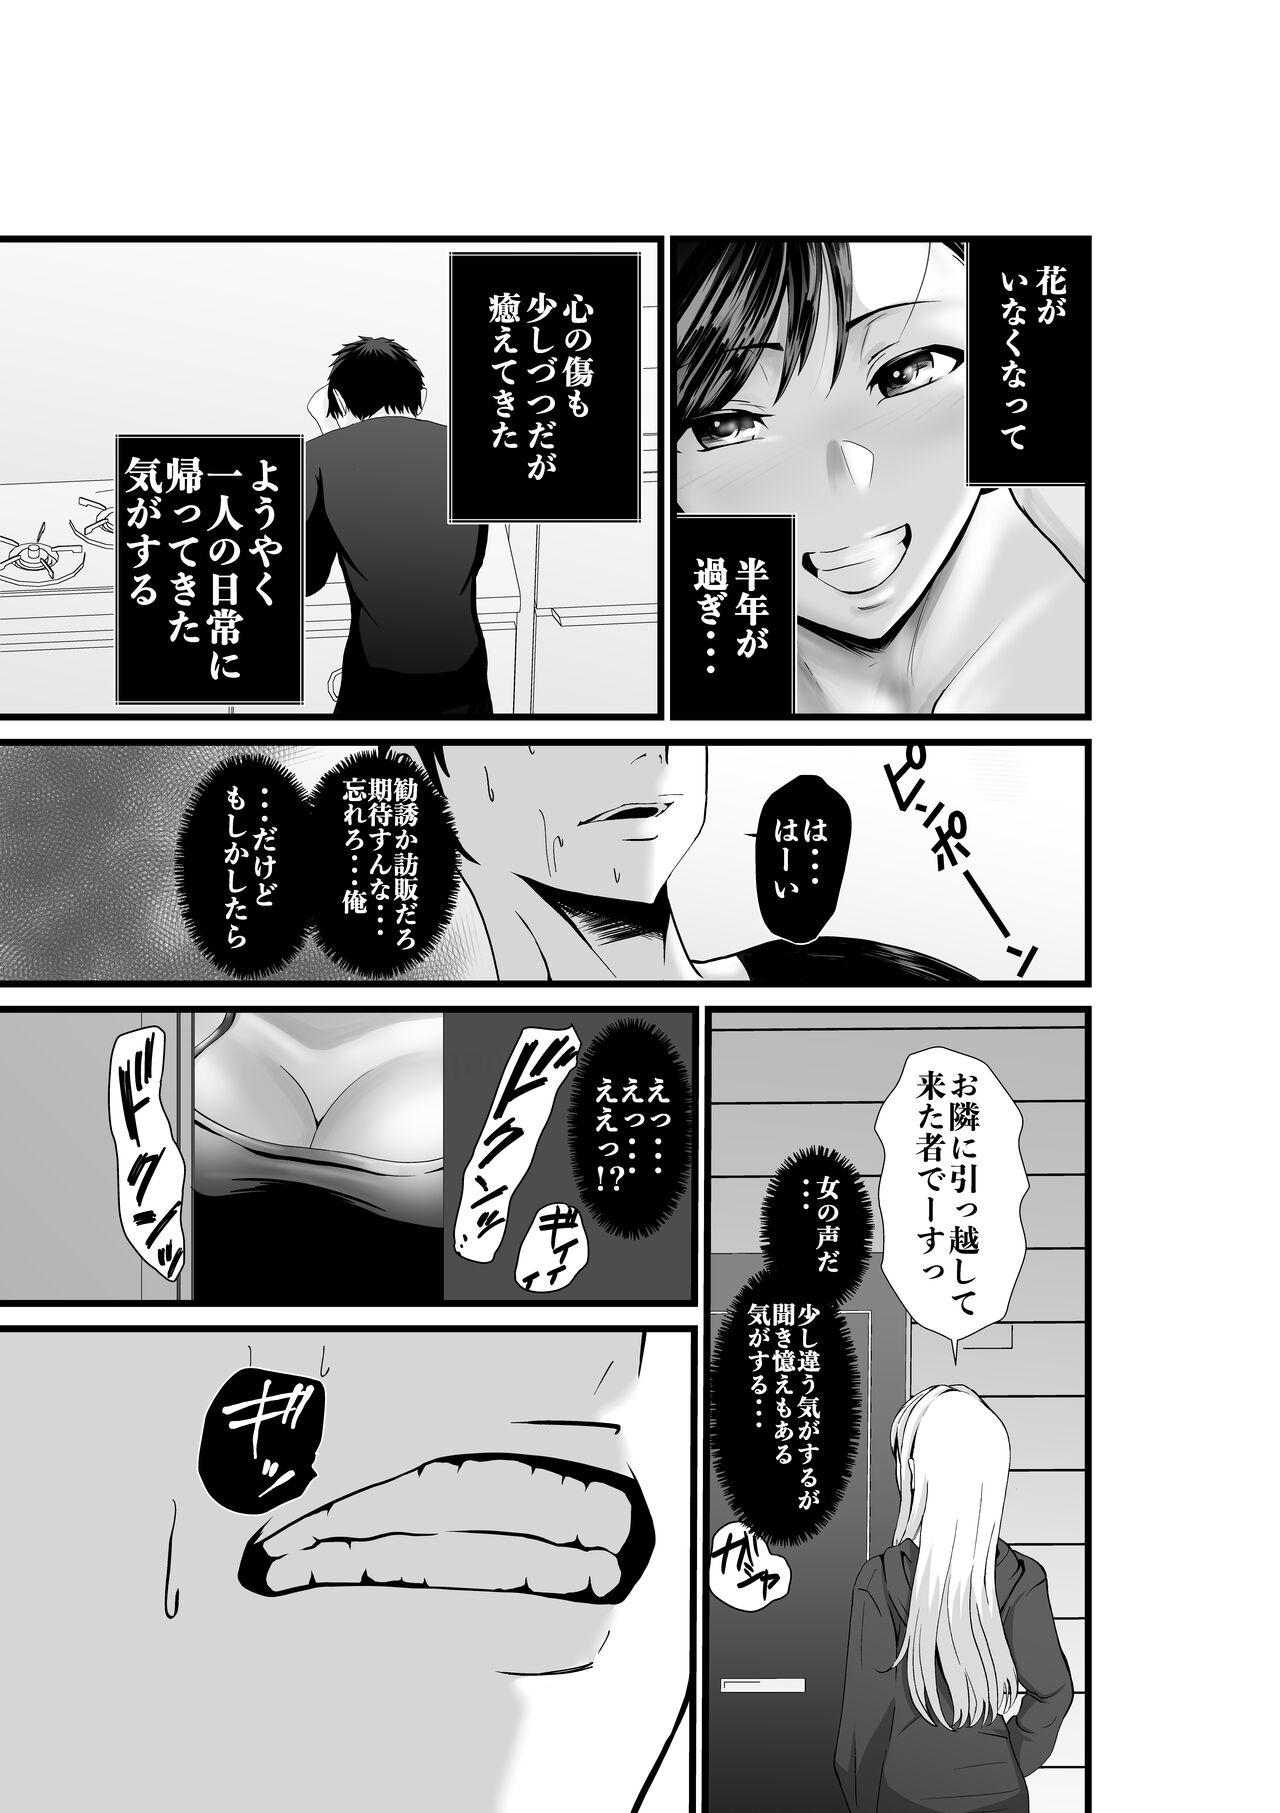 Red Head Otonari-san, Jibun no Dekachichi ga Buki ni Naru to Kizuite Shimau w 2 - Original Girlsfucking - Page 2